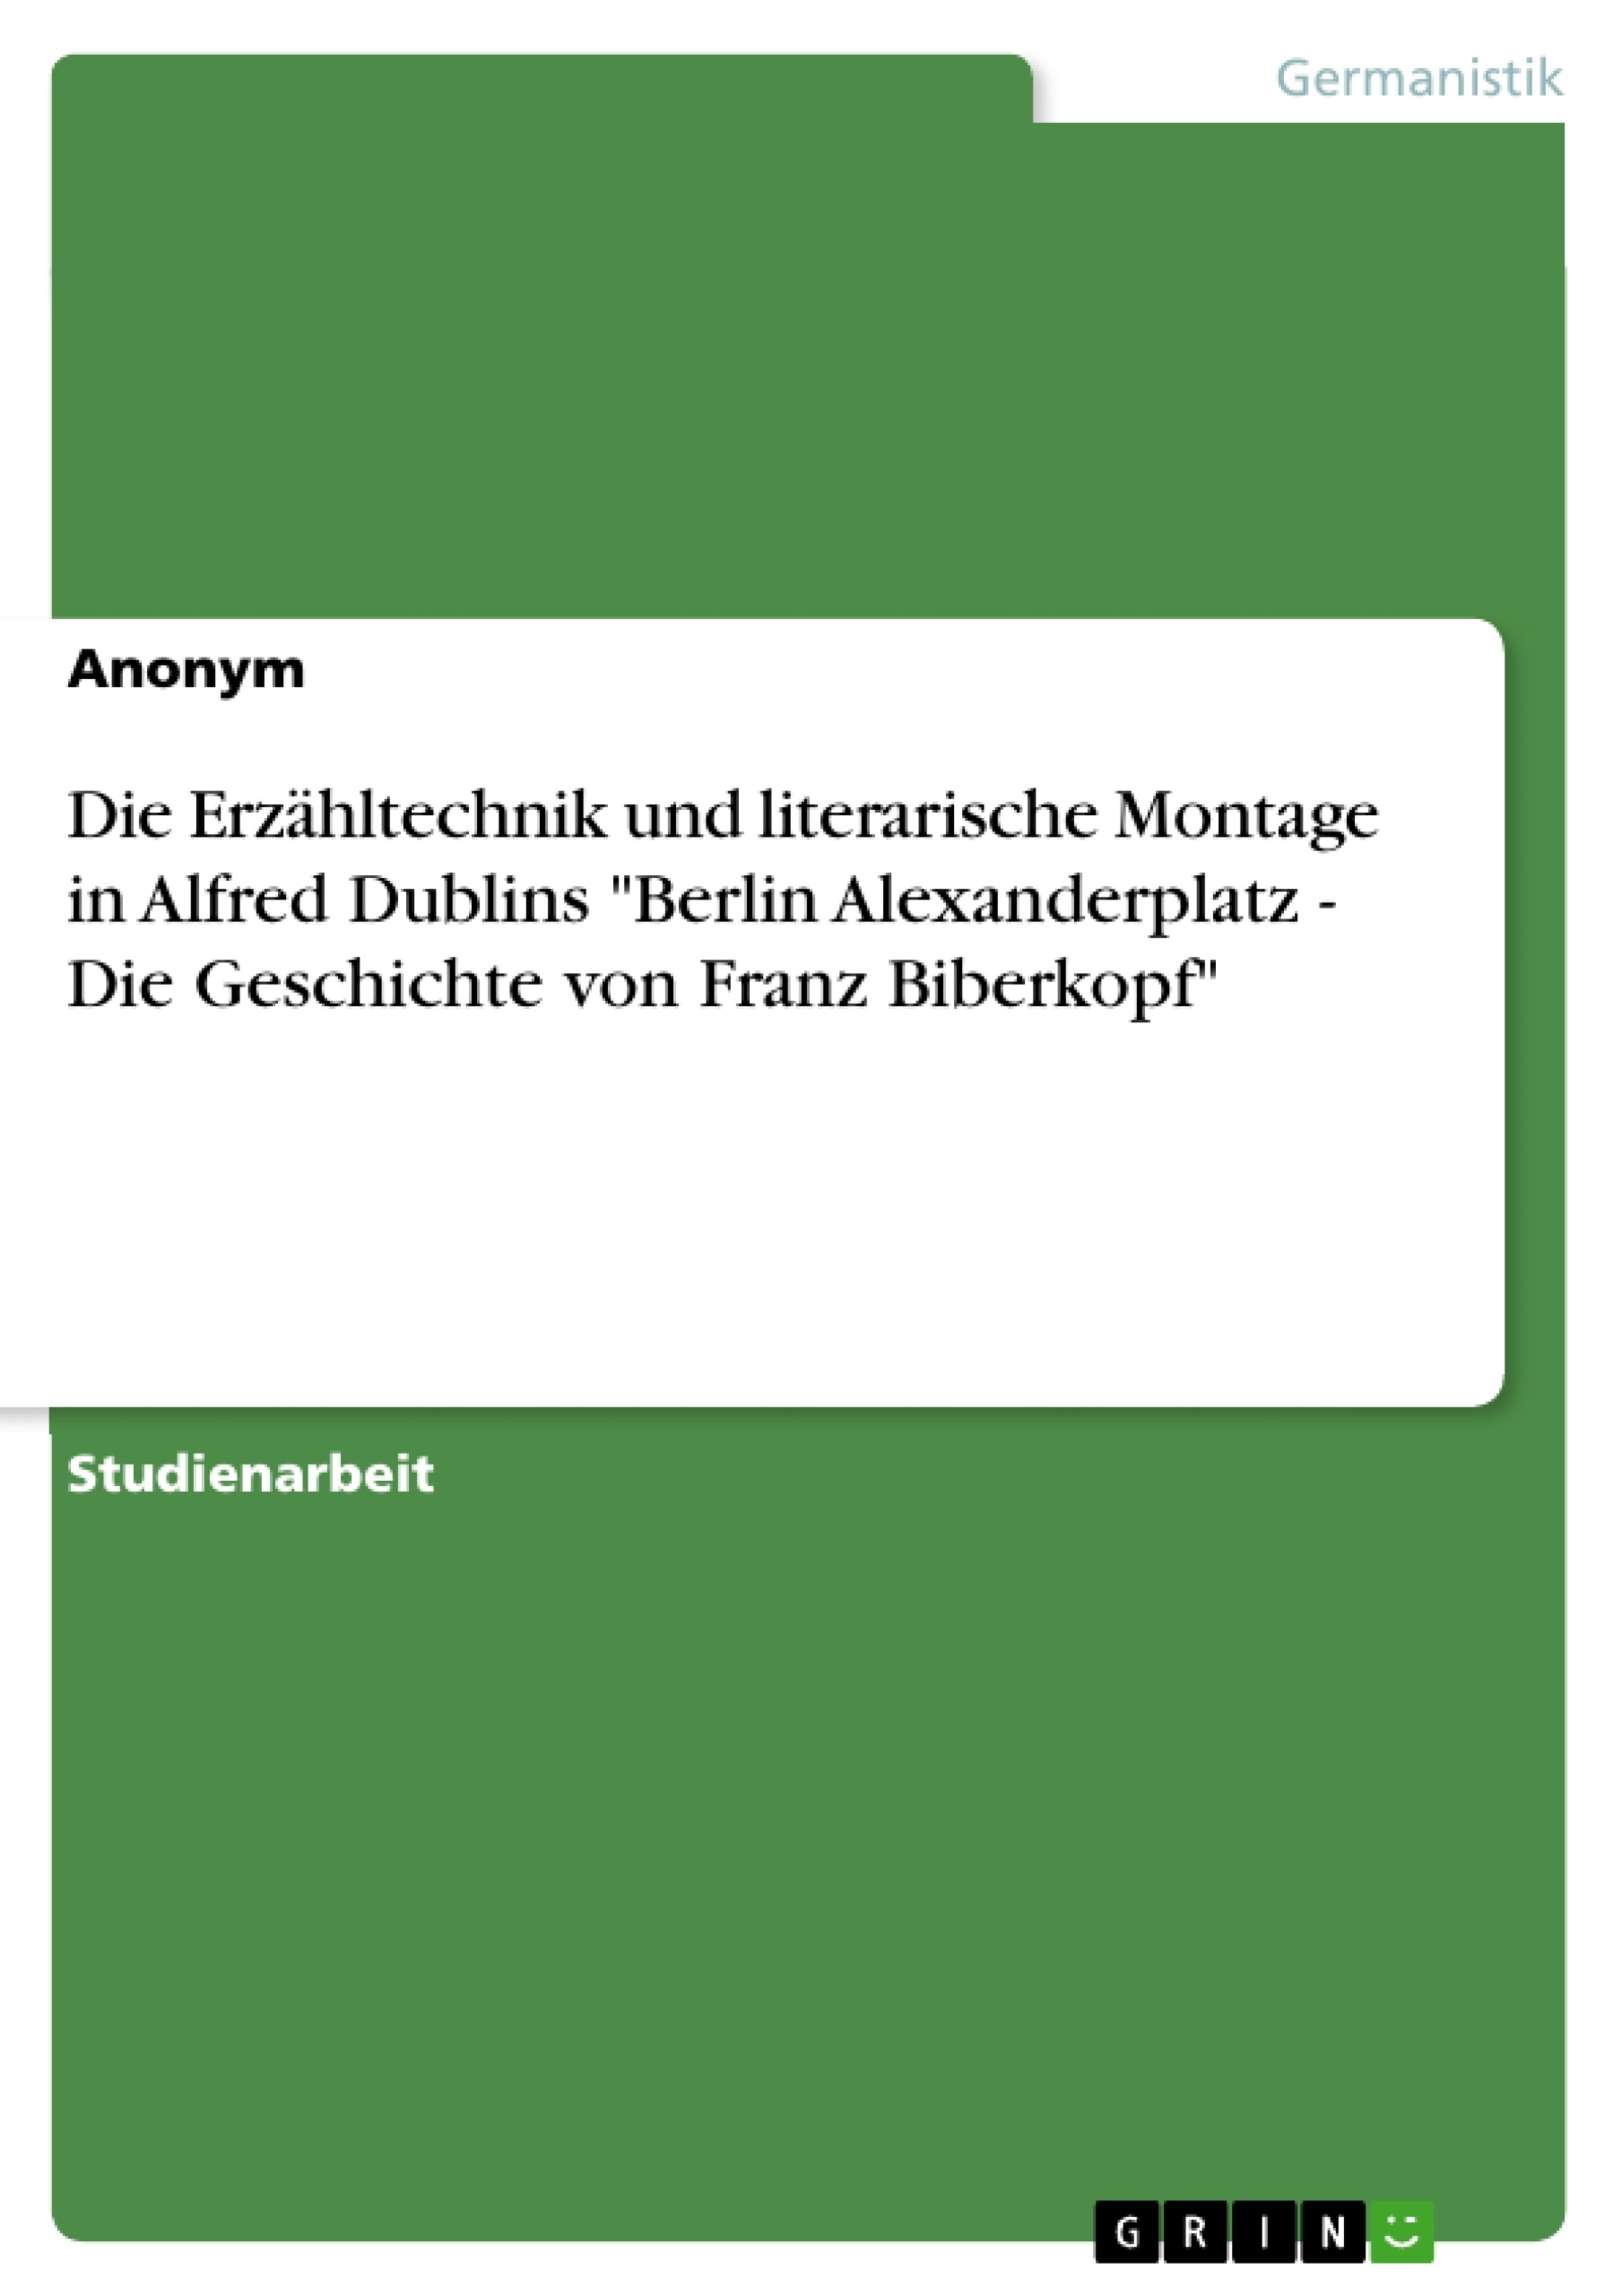 Titel: Die Erzähltechnik und literarische Montage in Alfred Dublins "Berlin Alexanderplatz - Die Geschichte von Franz Biberkopf"